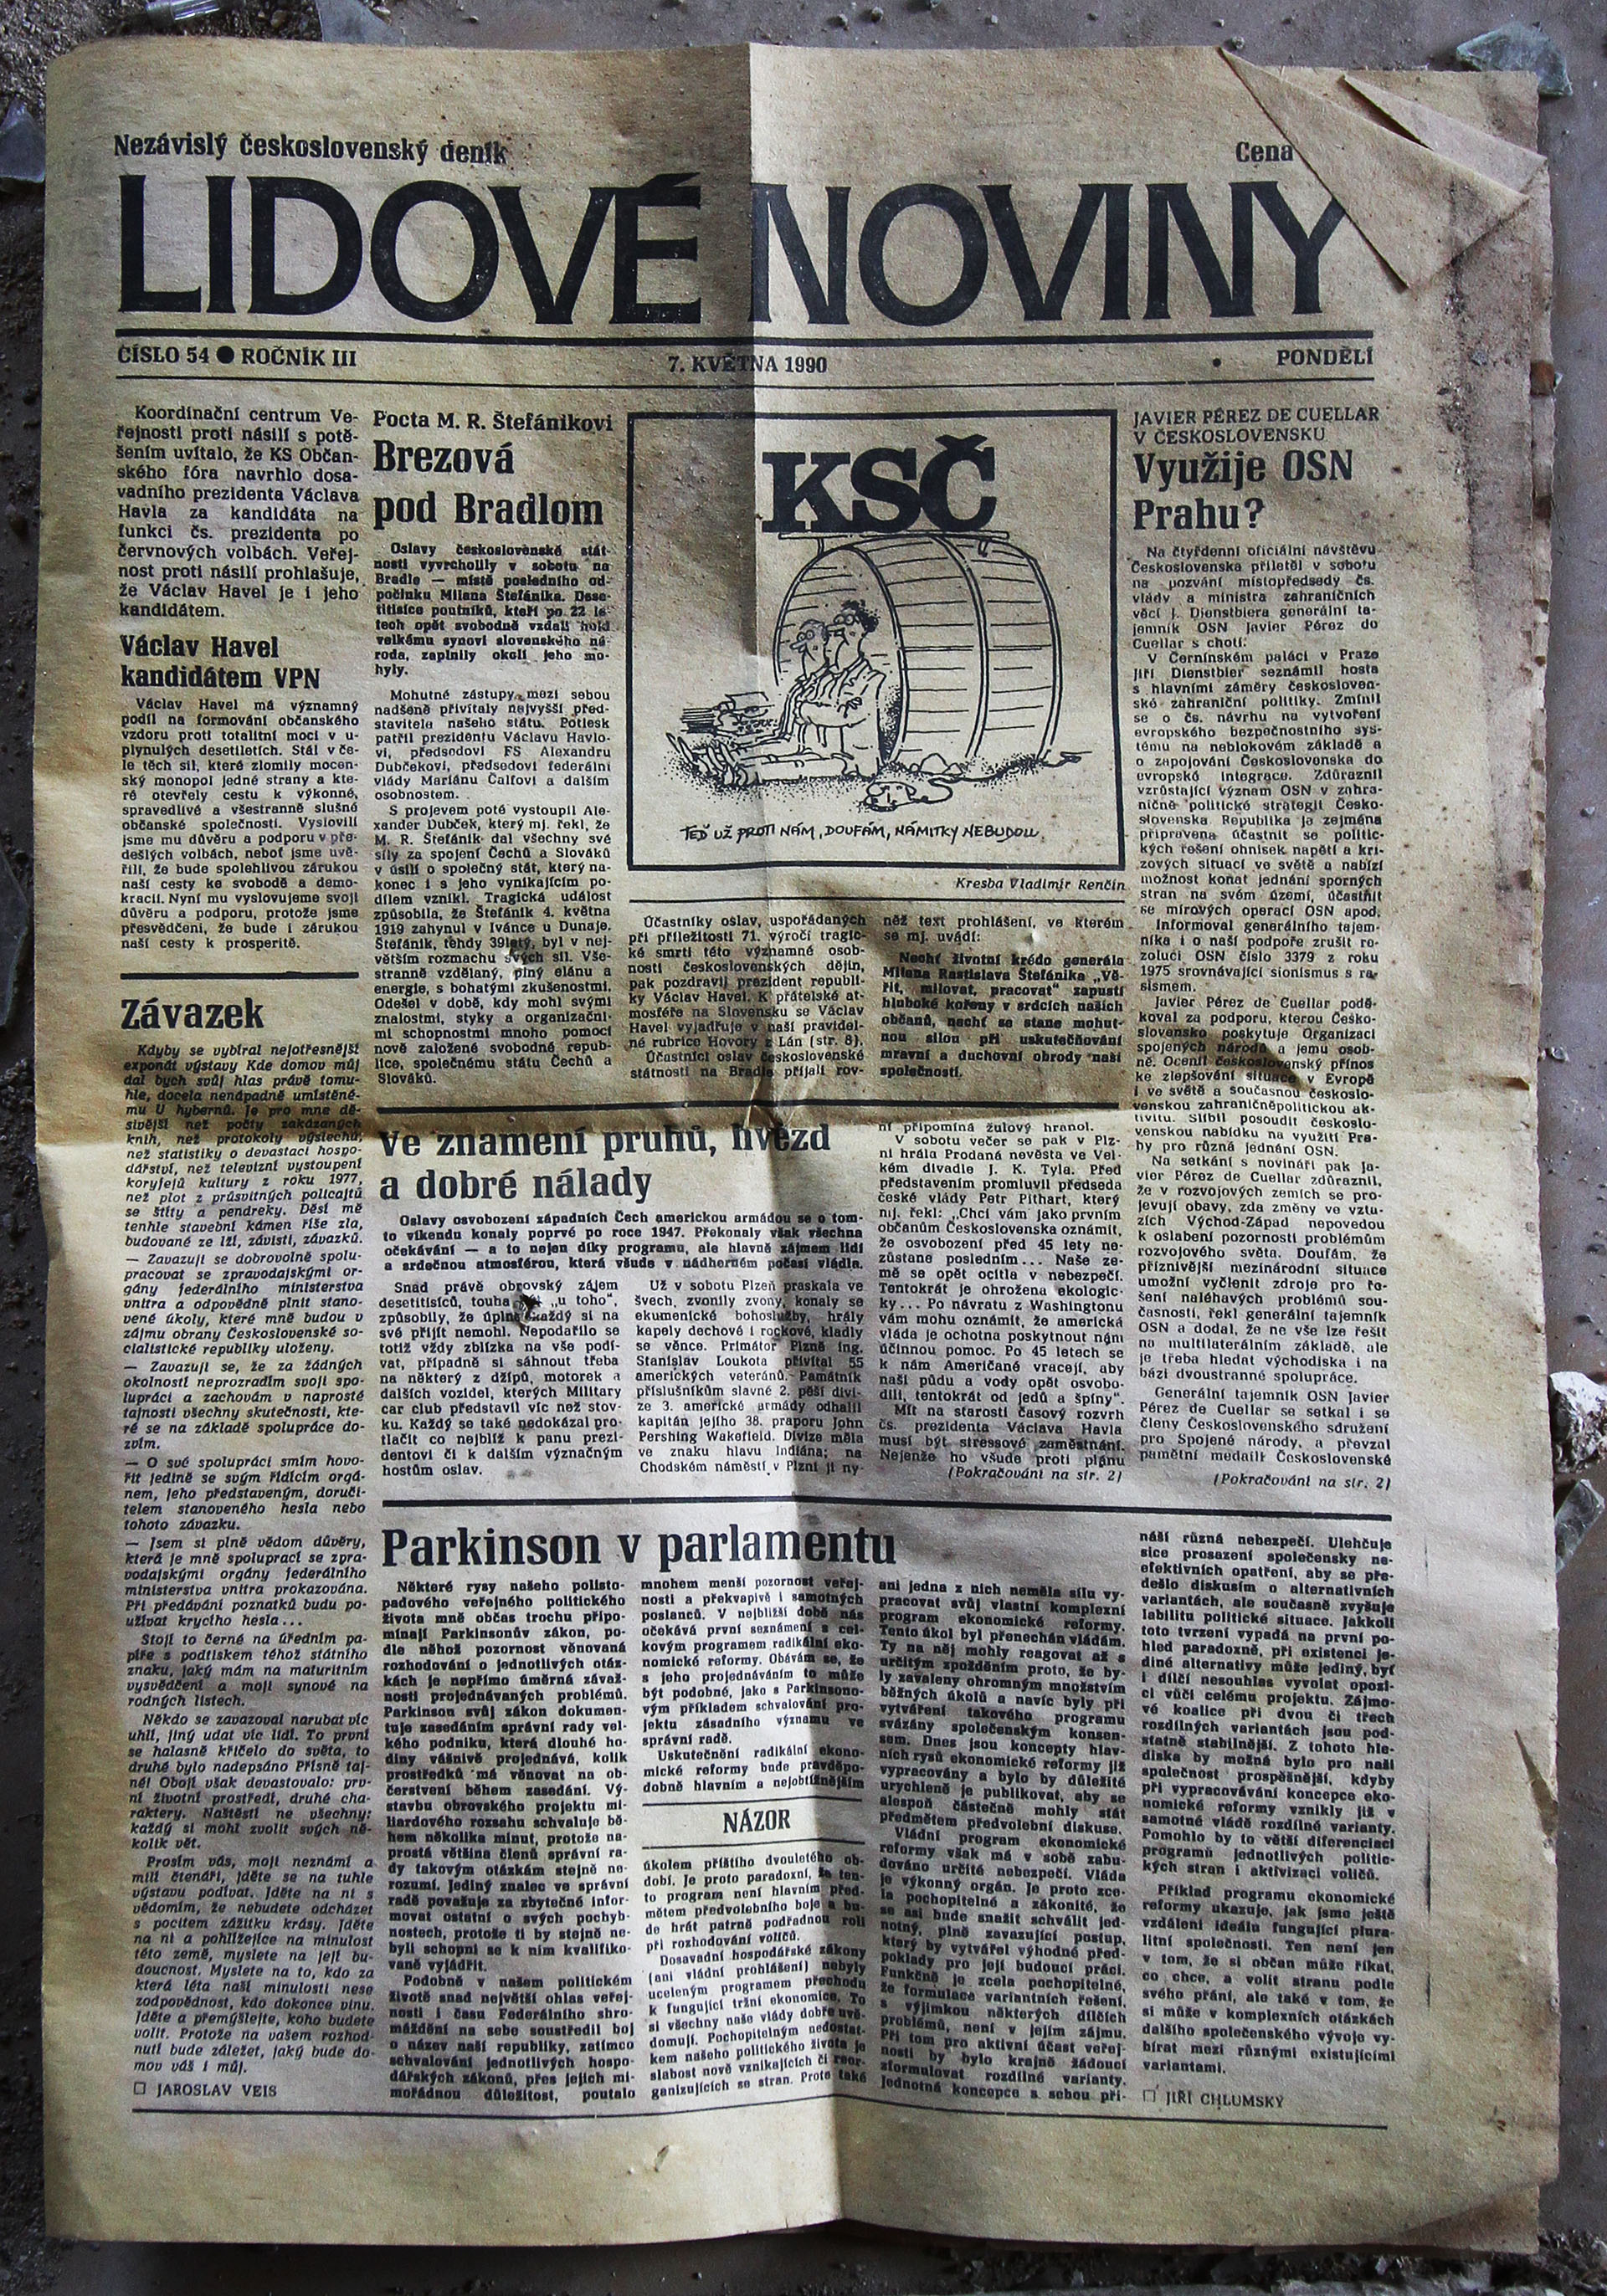 Loučíme se pohledem na nalezené Lidové noviny ze 7. května 1990. Za těch necelých 27 let se společnost neuvěřiteleně posunula - jako obvykle nečekaným směrem.